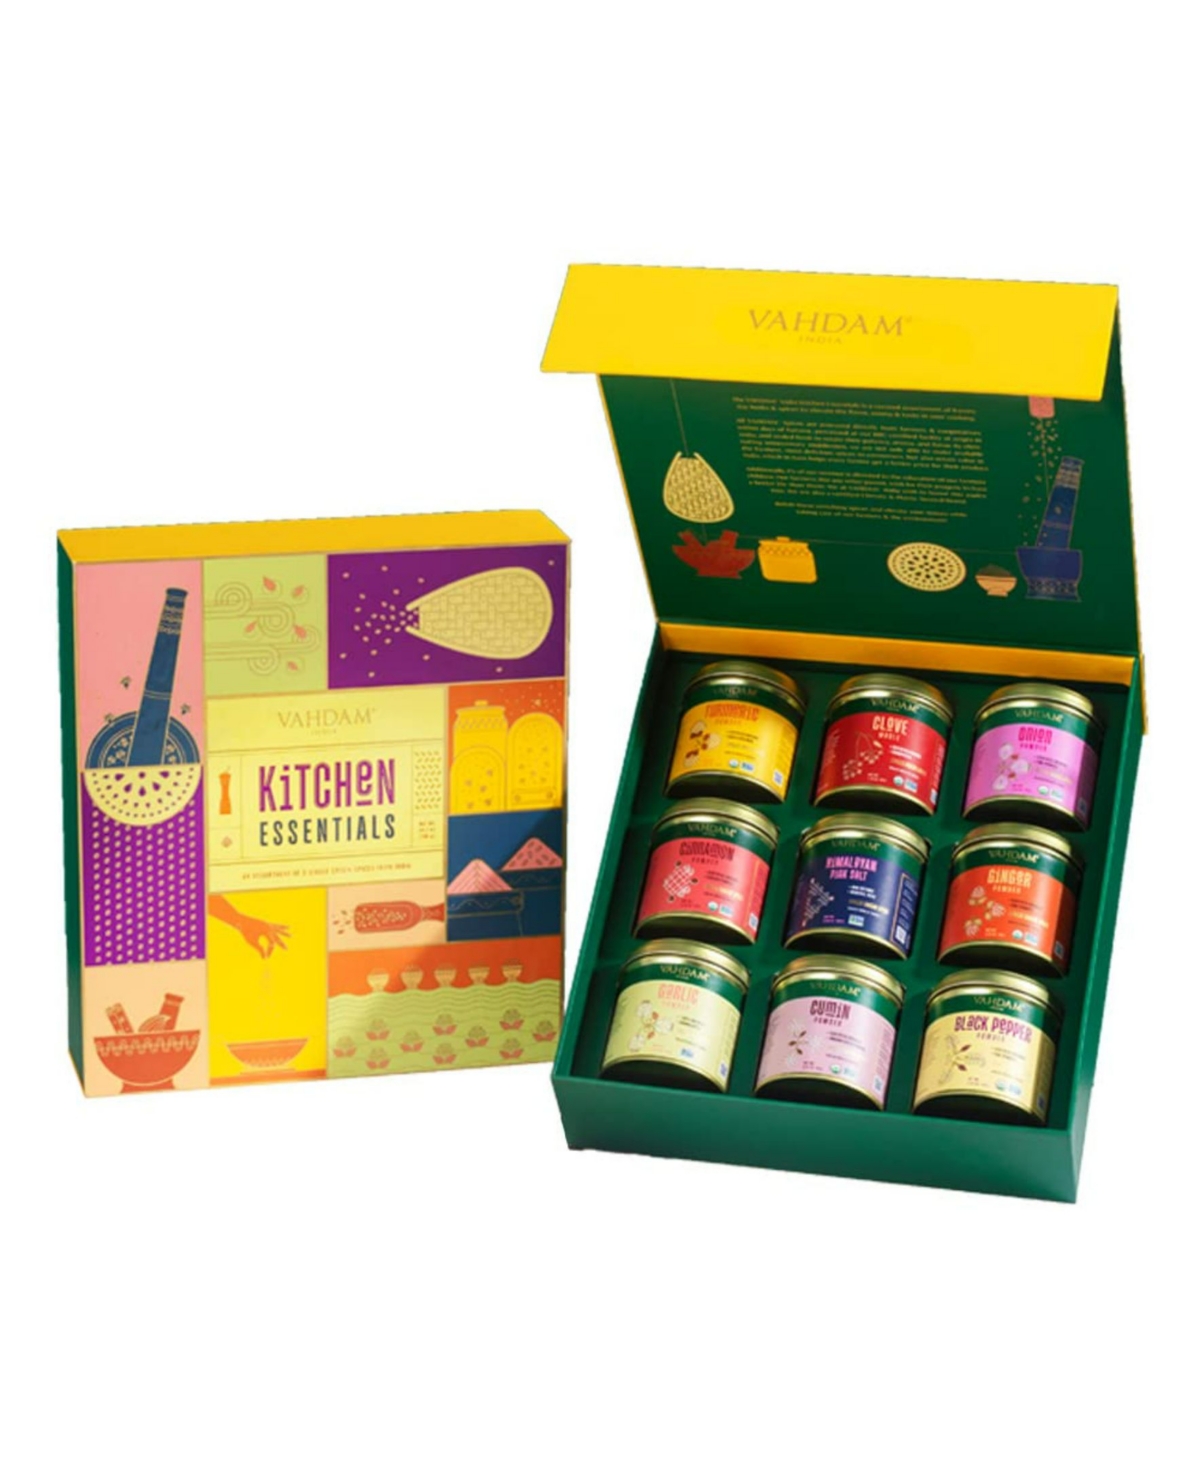 Vahdam Teas Kitchen Spice Essentials Gift Box, 9 Piece